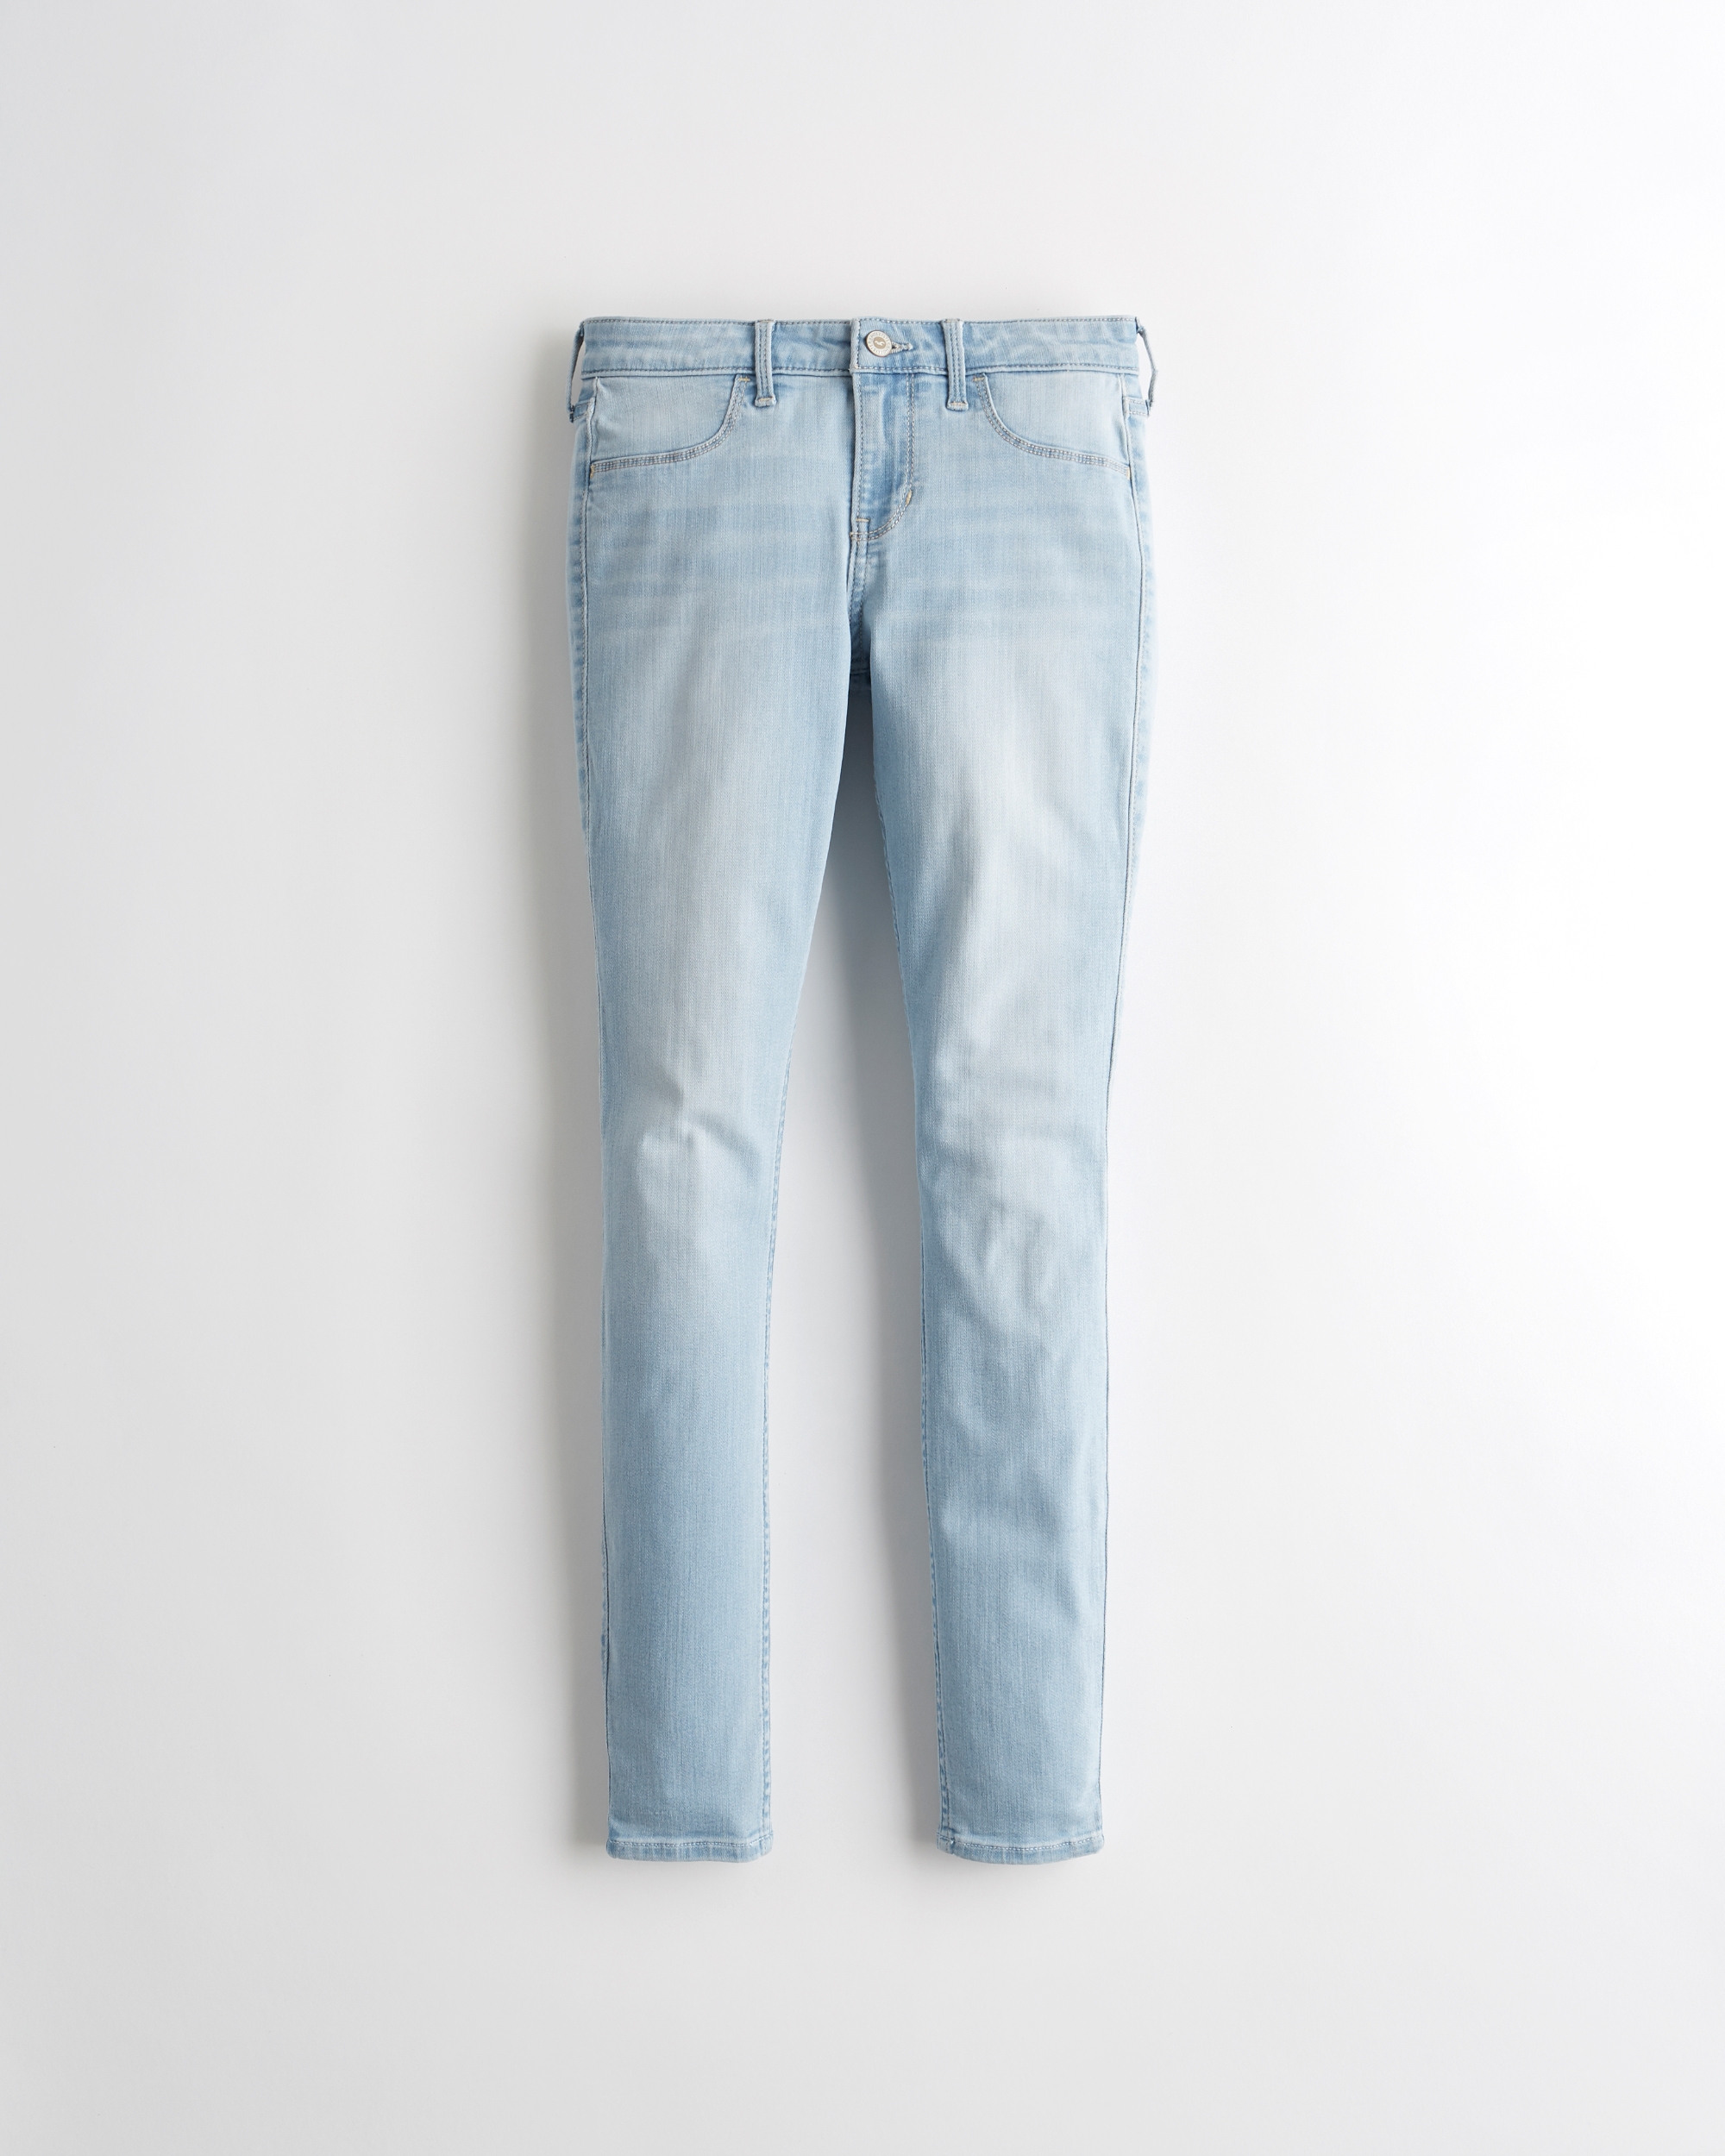 wholesale hollister jeans